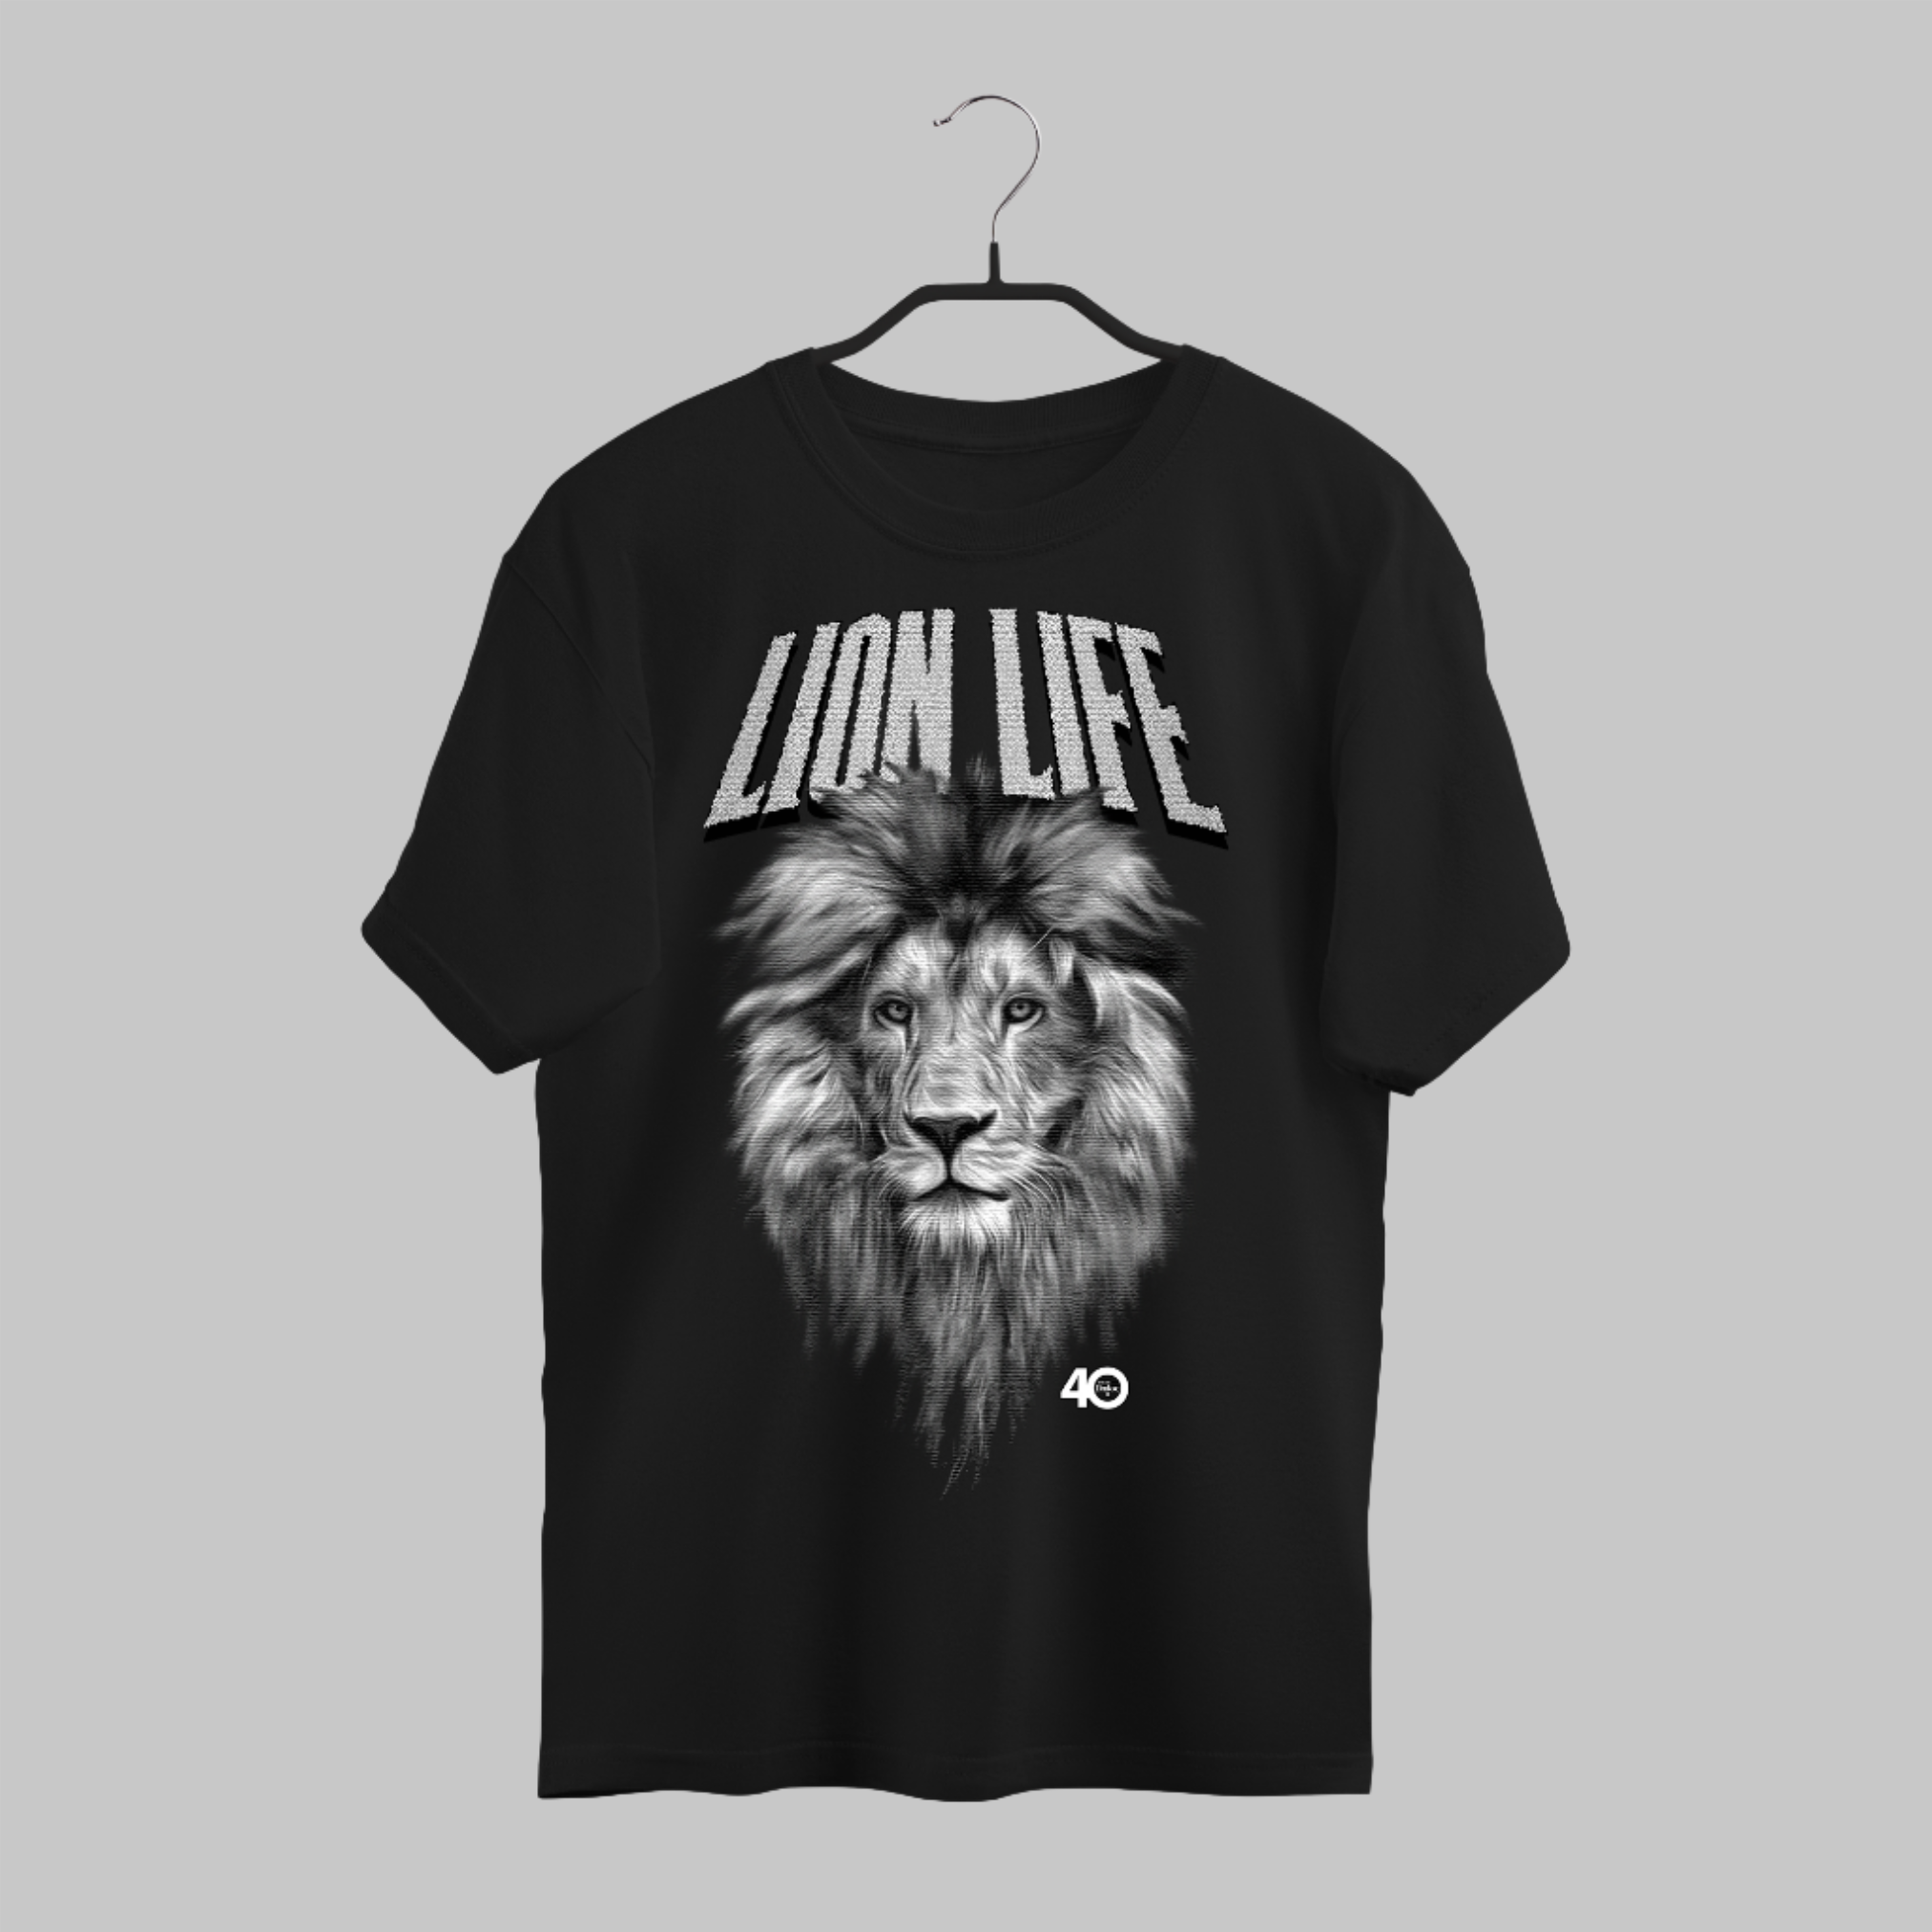 Lion Life Black & White T-shirt